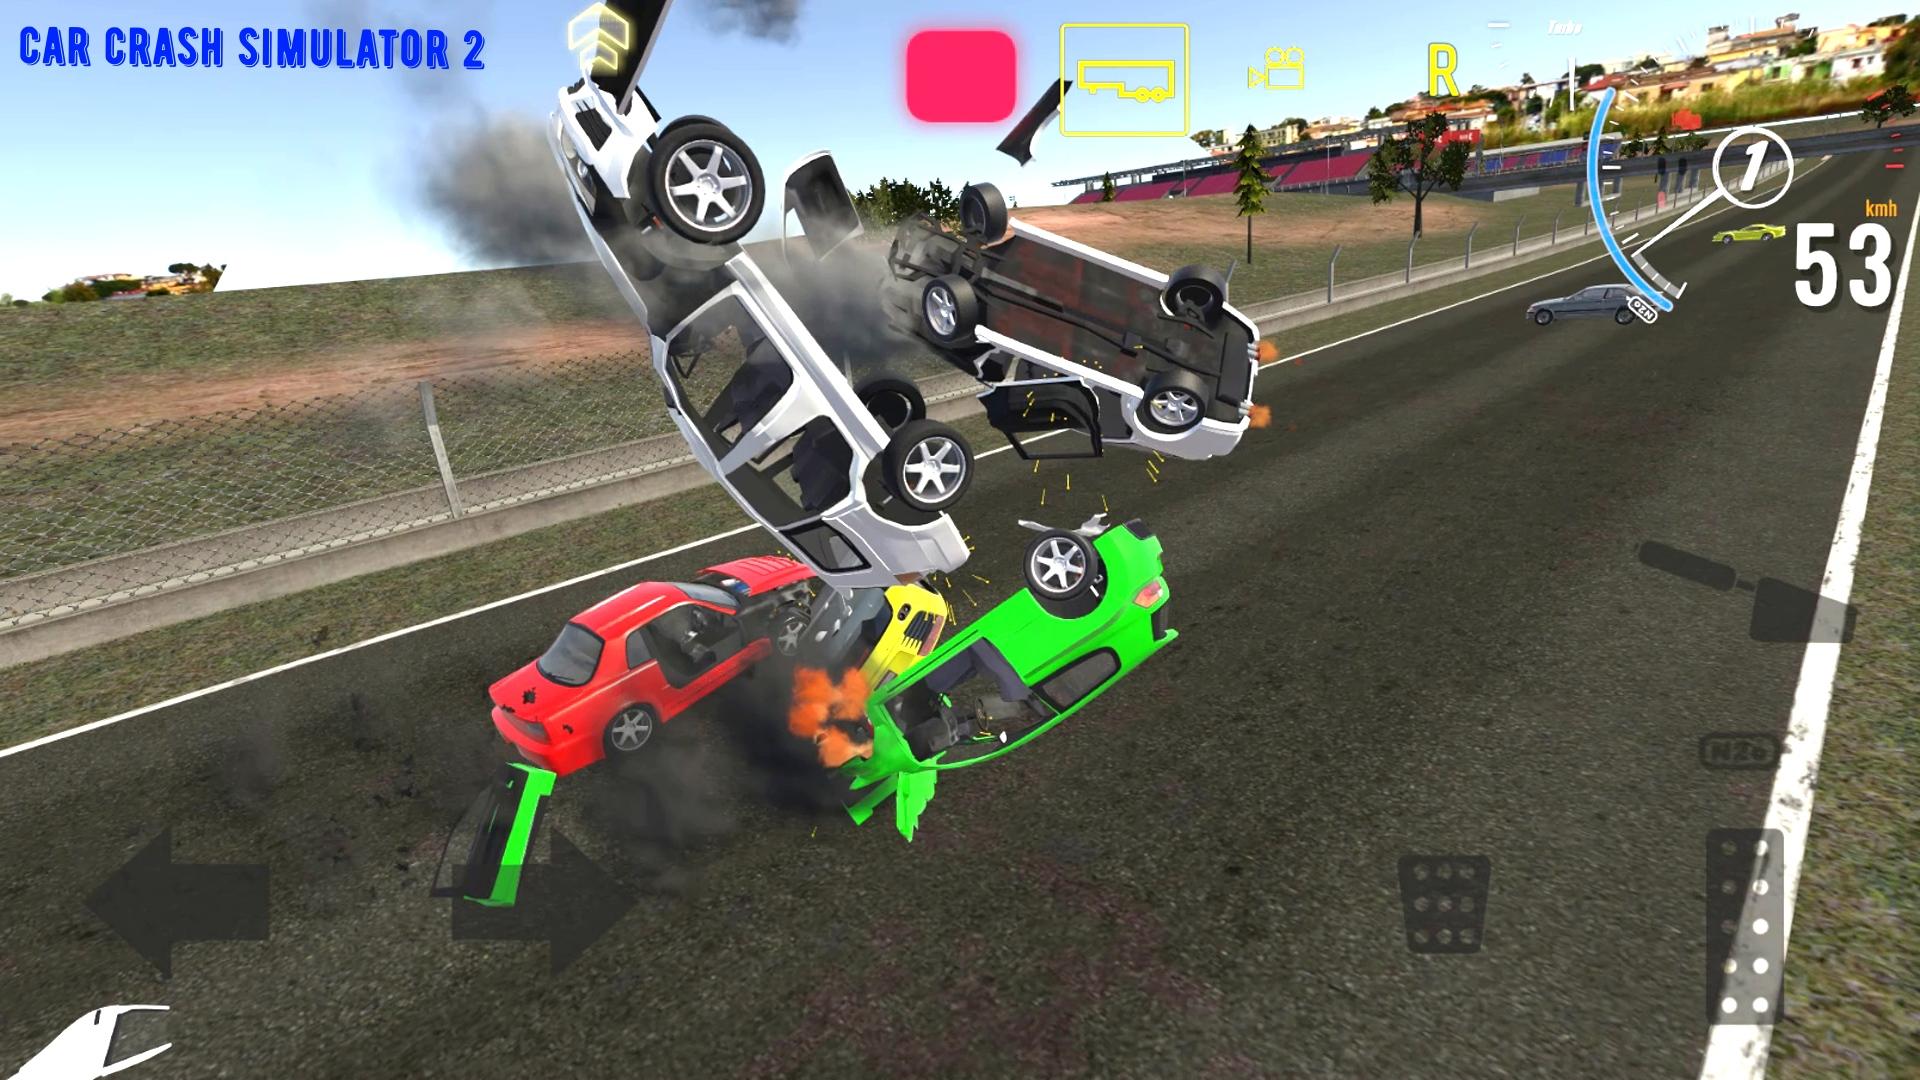 Deforming crash 2. Кар крэш симулятор. Симулятор аварий авто. Игра car Jump crash Simulator. Deforming car crash 2.